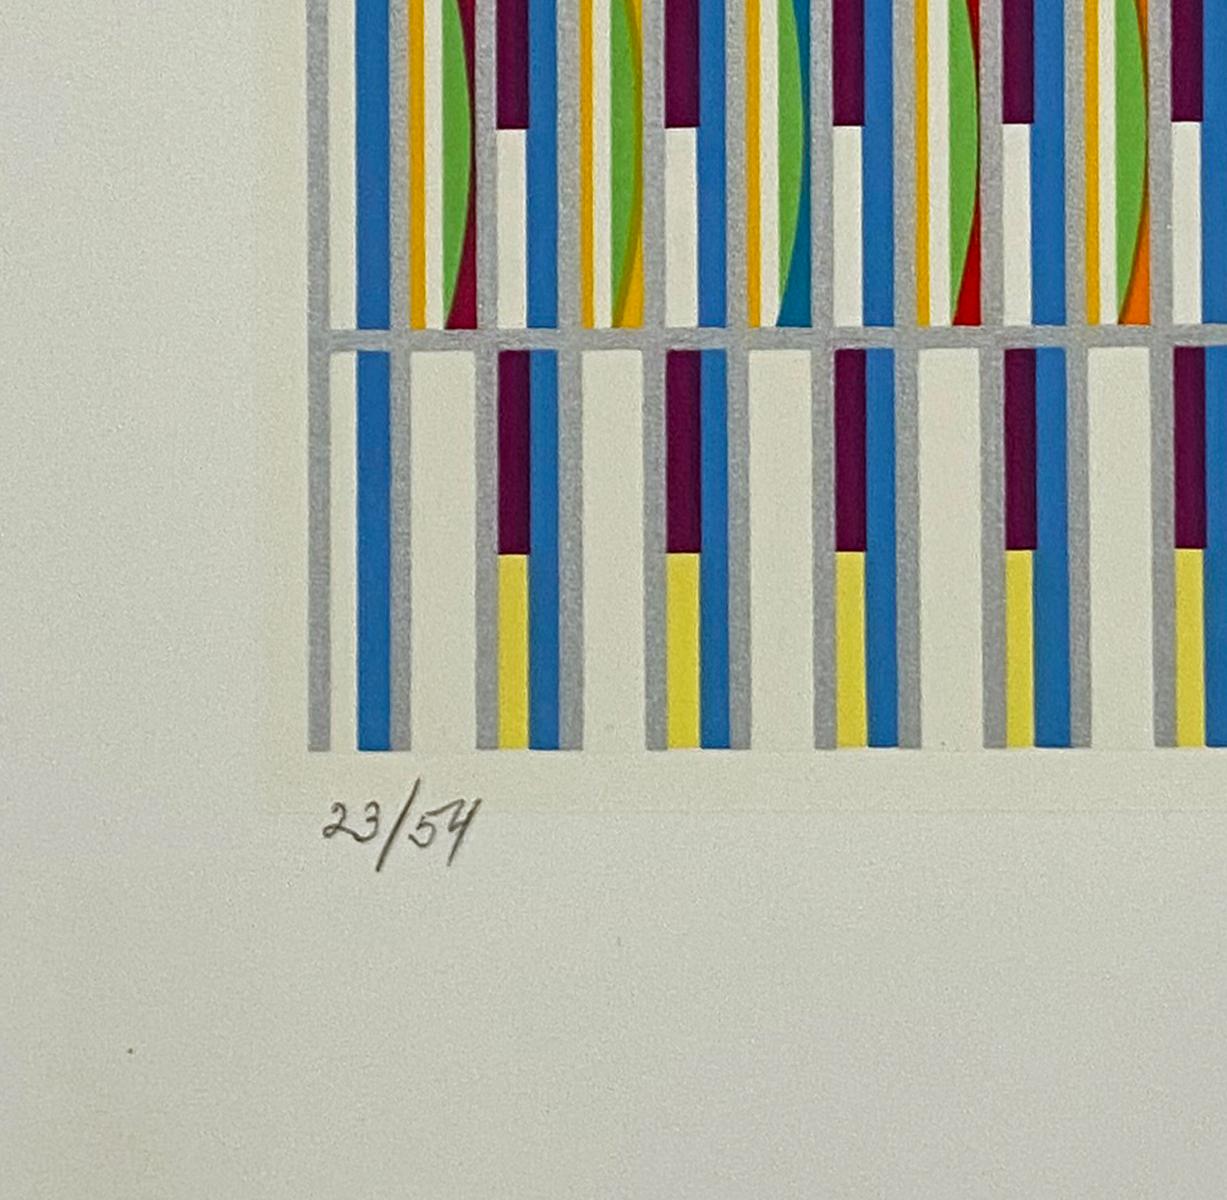 Artiste : Yaacov Agam
Titre : Sans titre
Portefeuille : Orchestration verticale
Médium : Sérigraphie
Année : 1980
Edition : 23/54
Taille de la feuille : 29 5/8